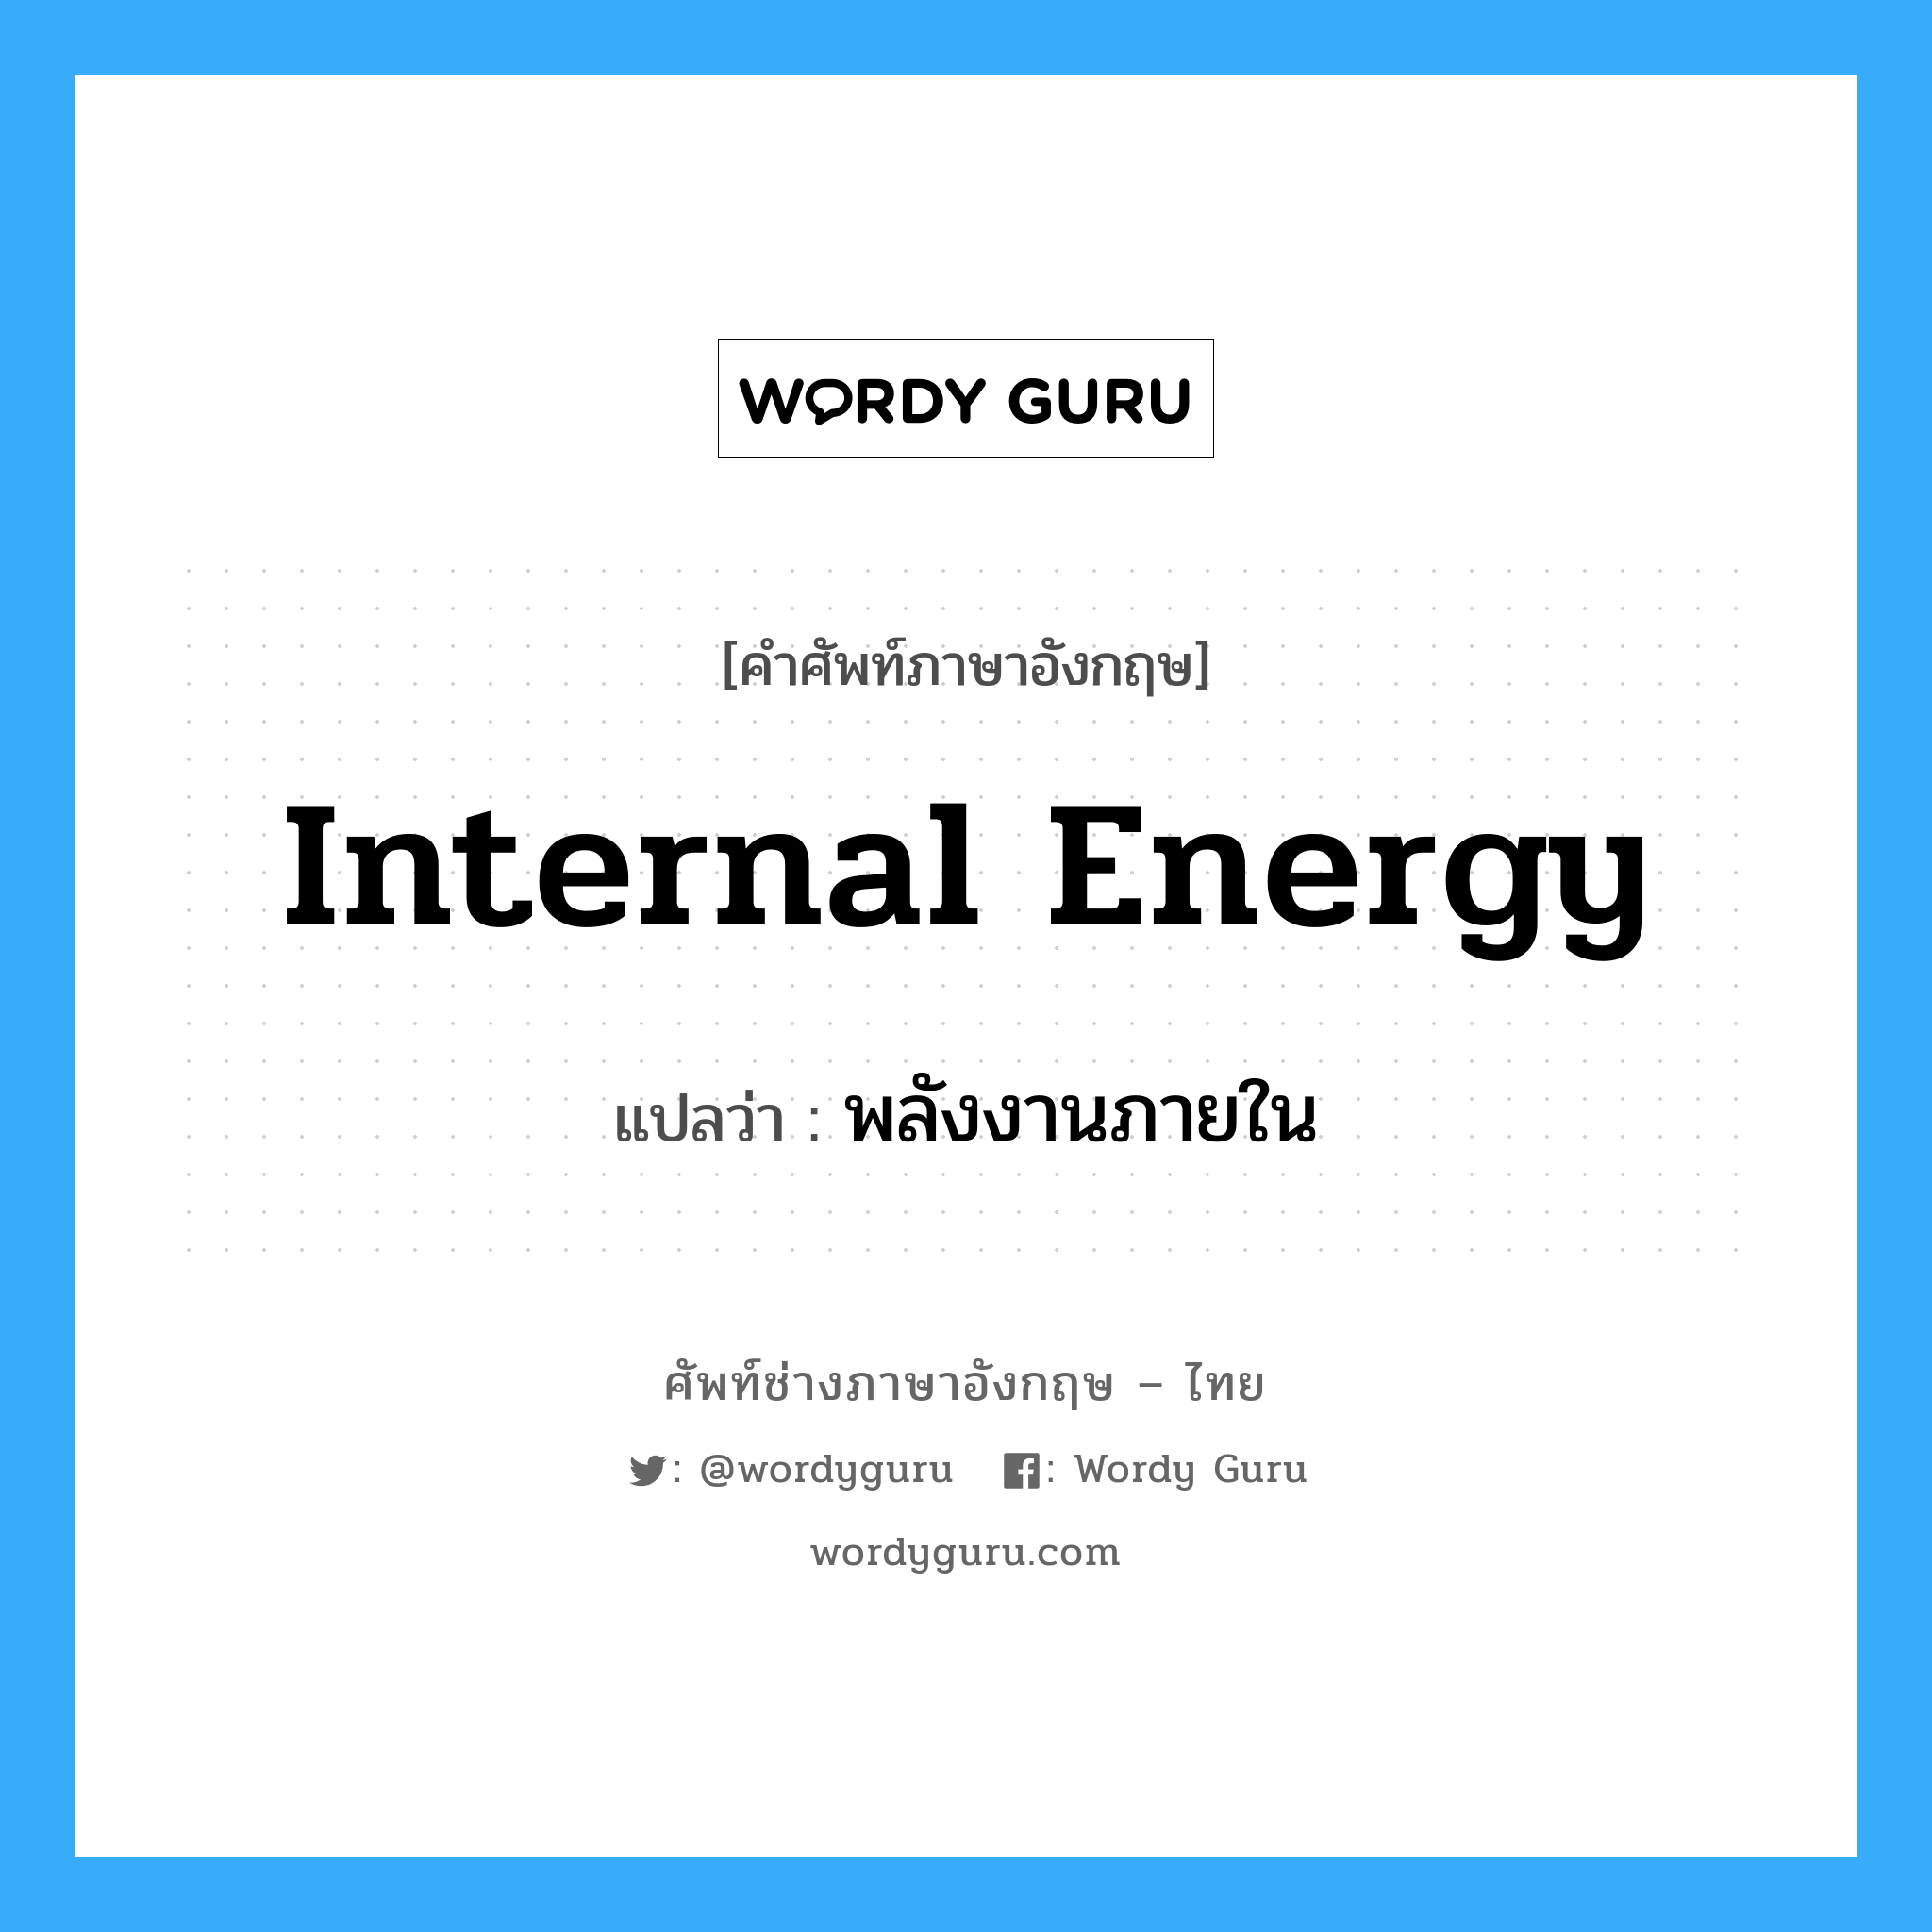 internal energy แปลว่า?, คำศัพท์ช่างภาษาอังกฤษ - ไทย internal energy คำศัพท์ภาษาอังกฤษ internal energy แปลว่า พลังงานภายใน